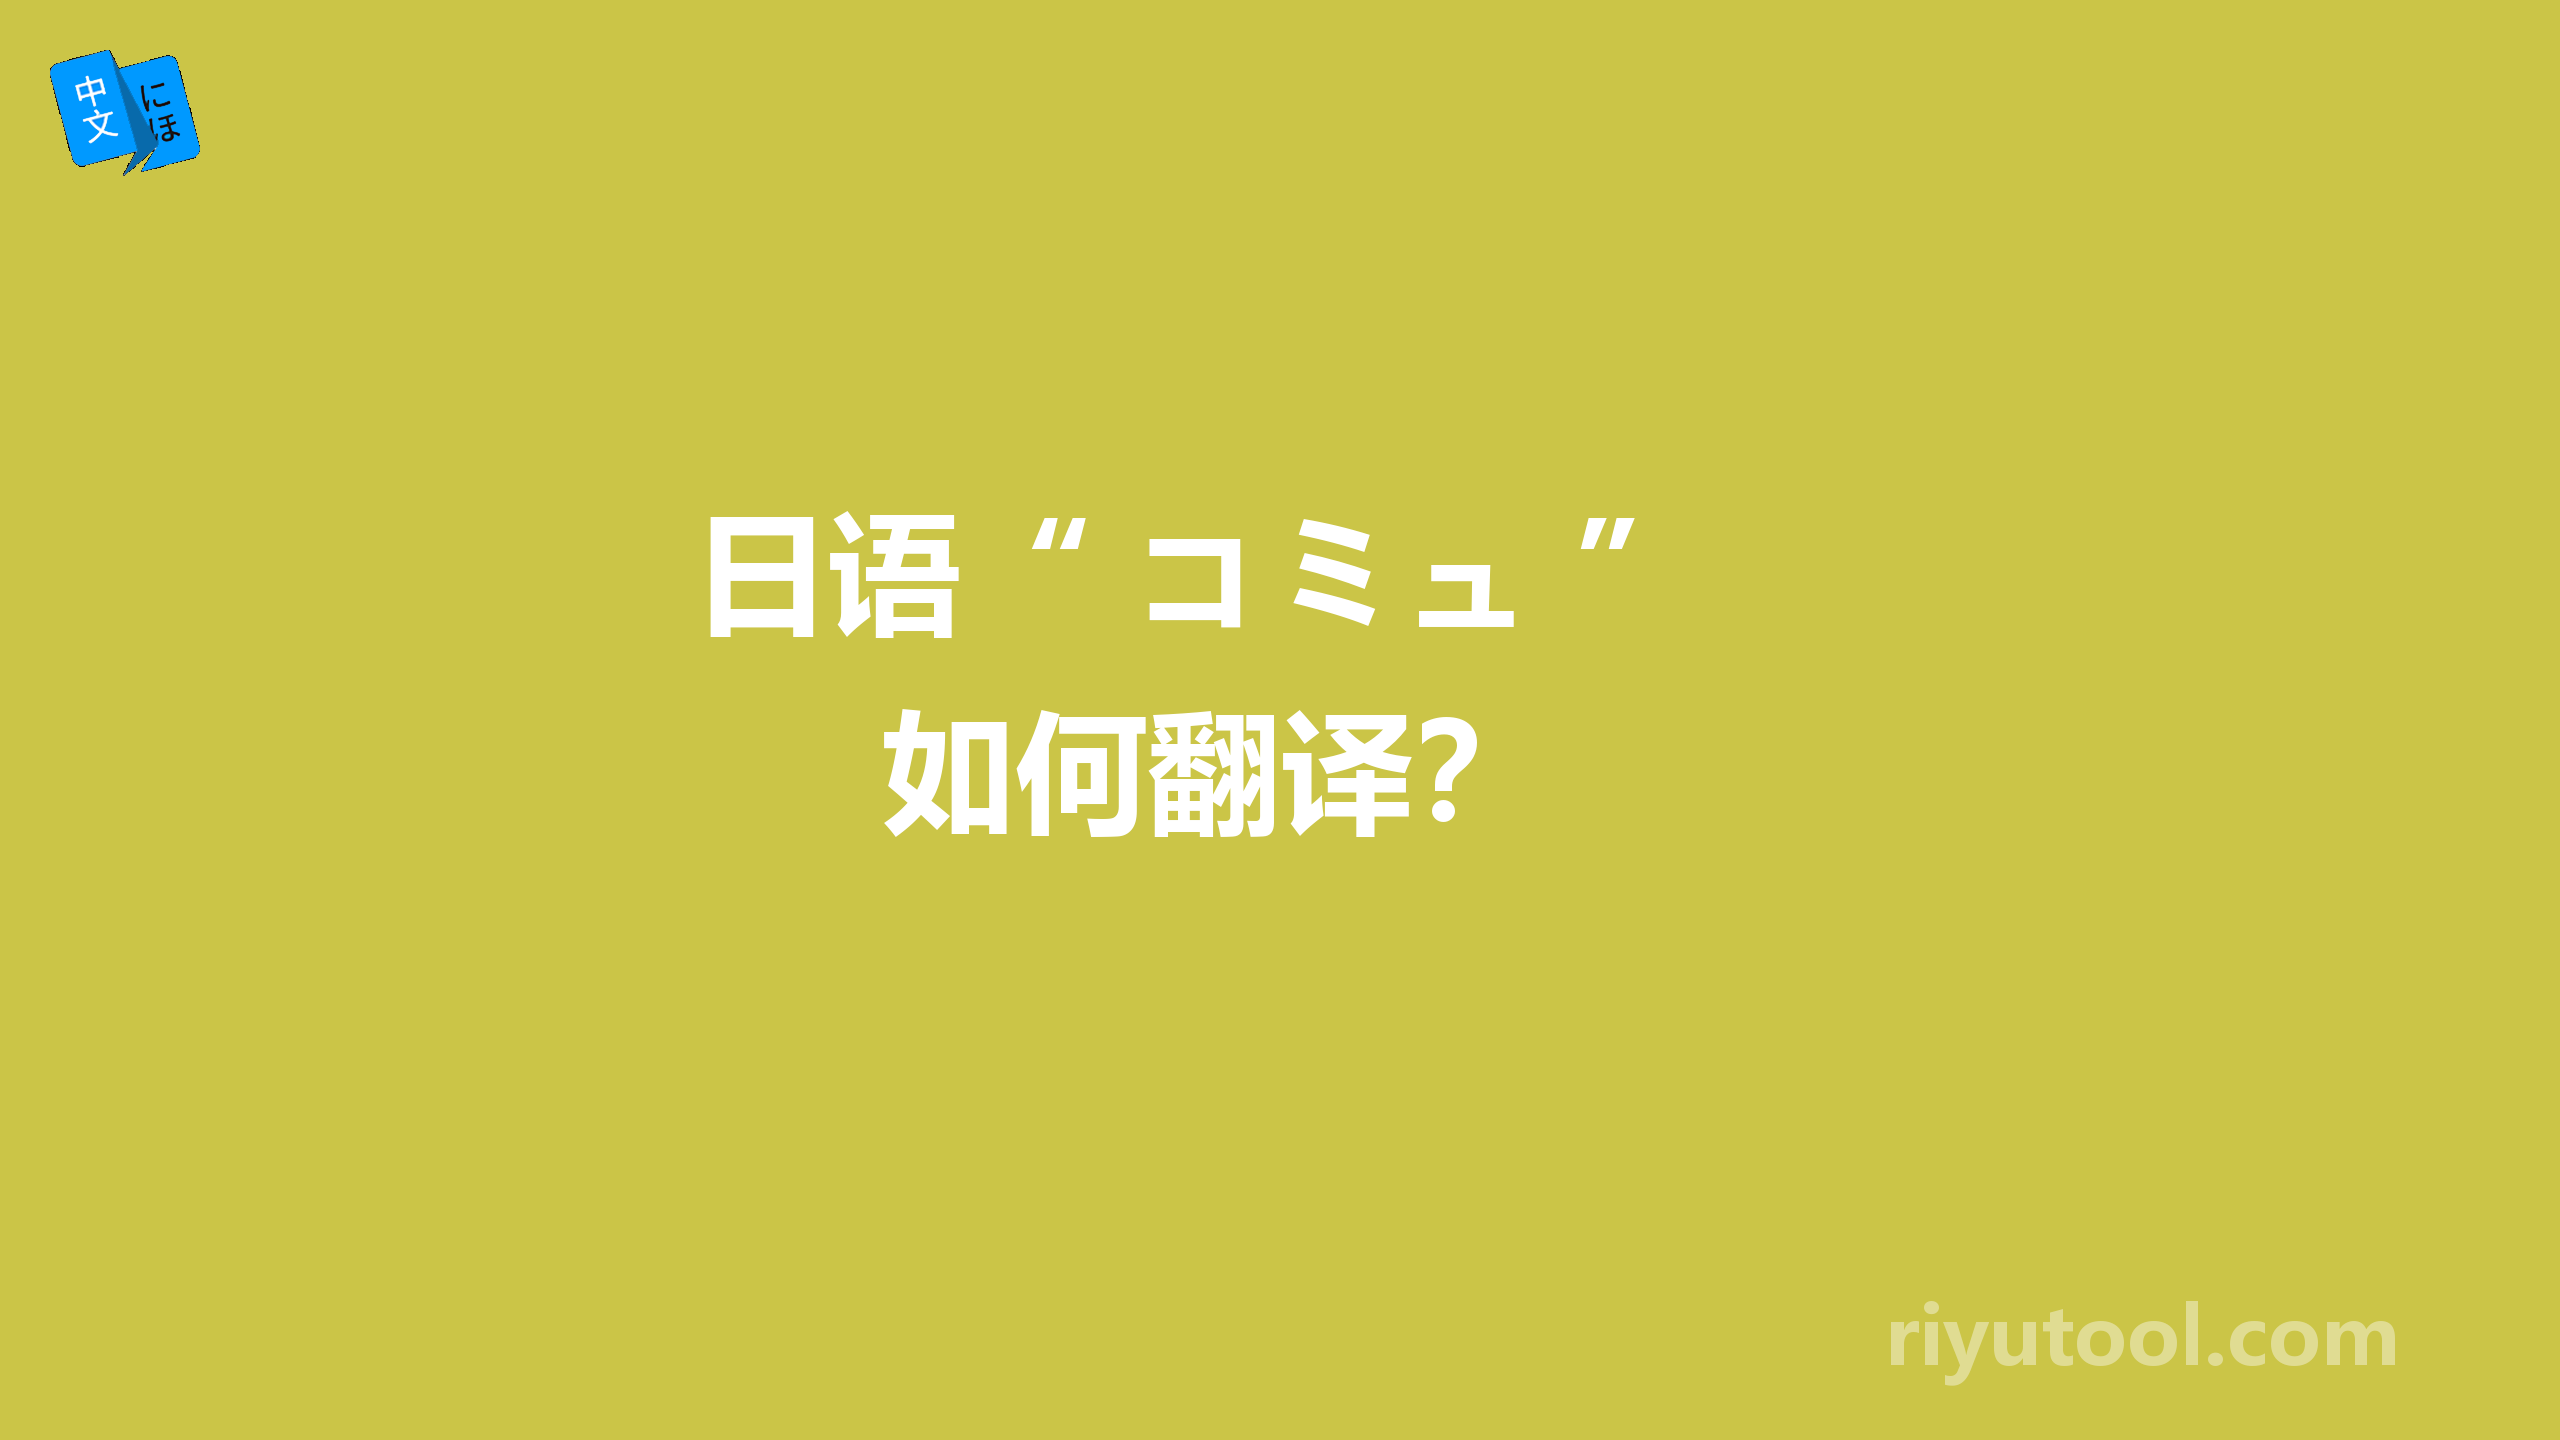  日语“ コミュ ” 如何翻译？ 